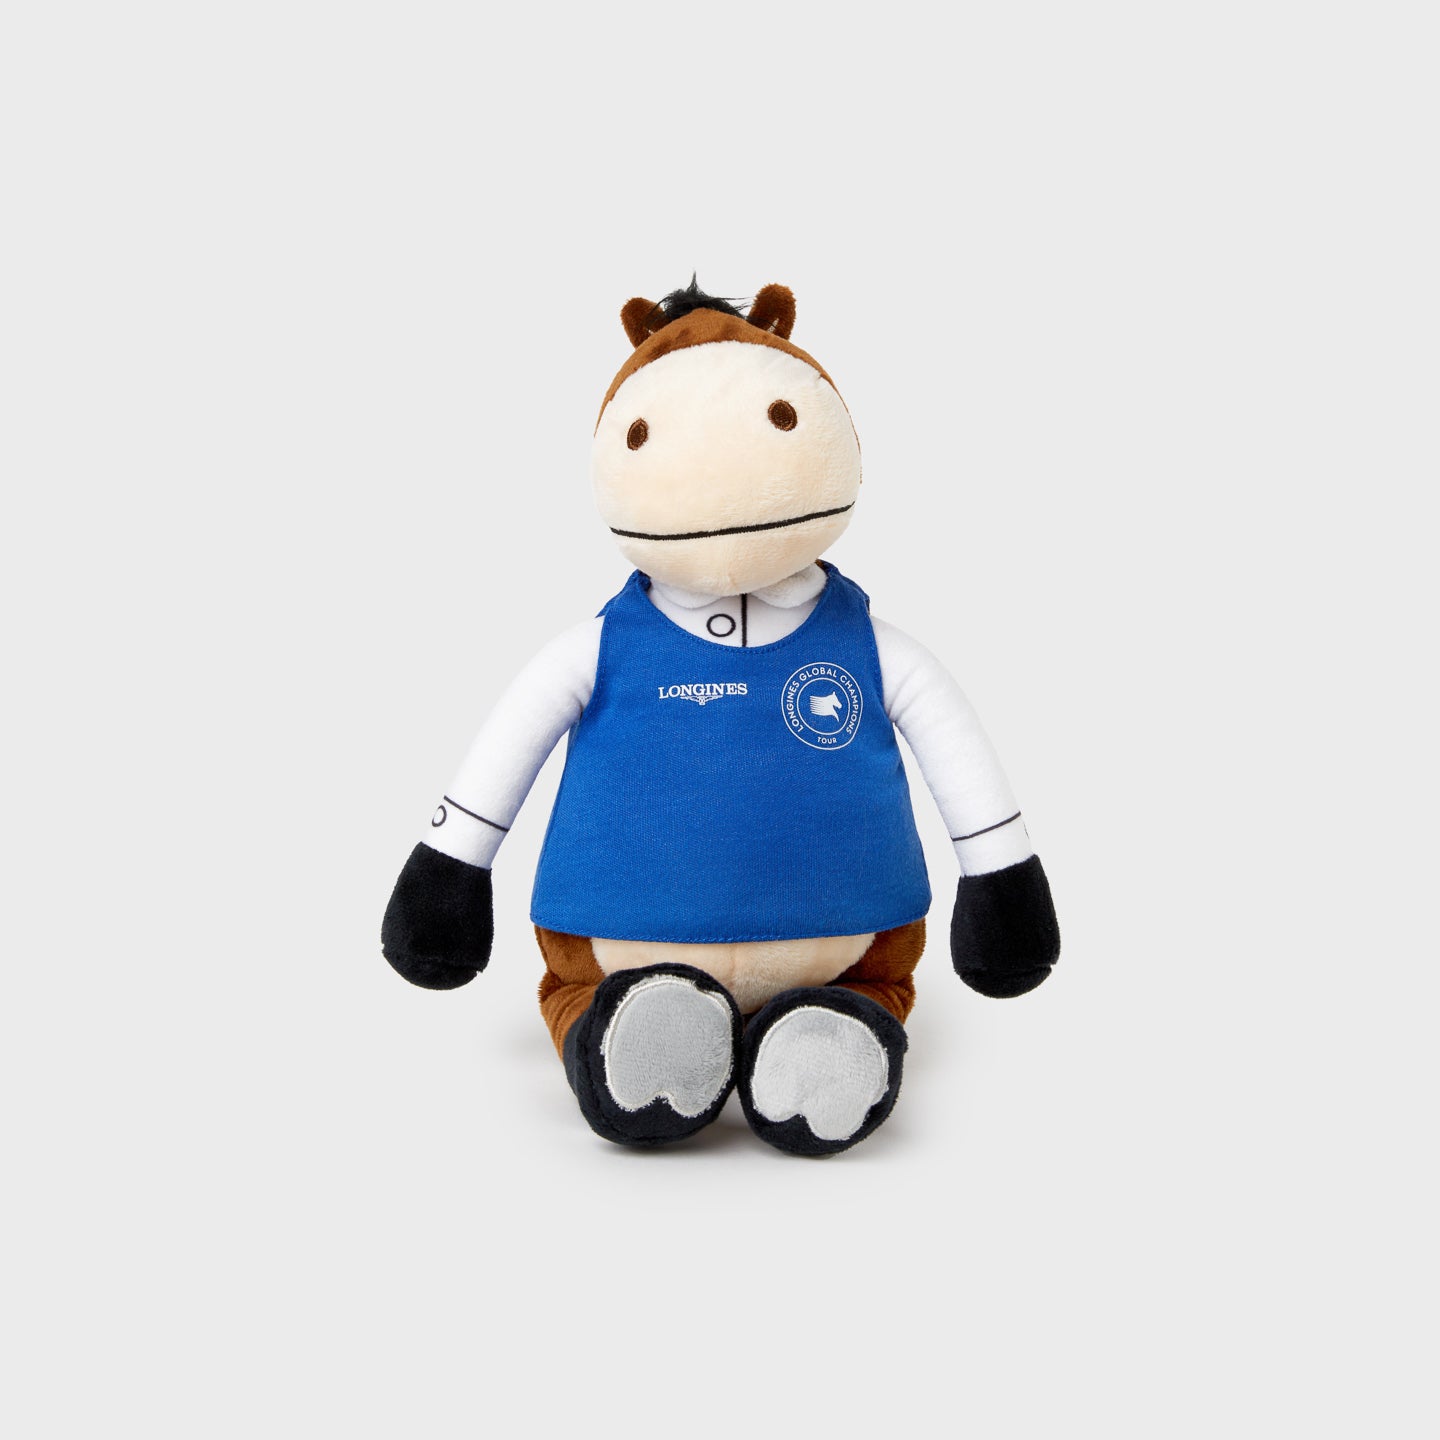 LGCT 30cm Mascot Plush Toy - Sammy